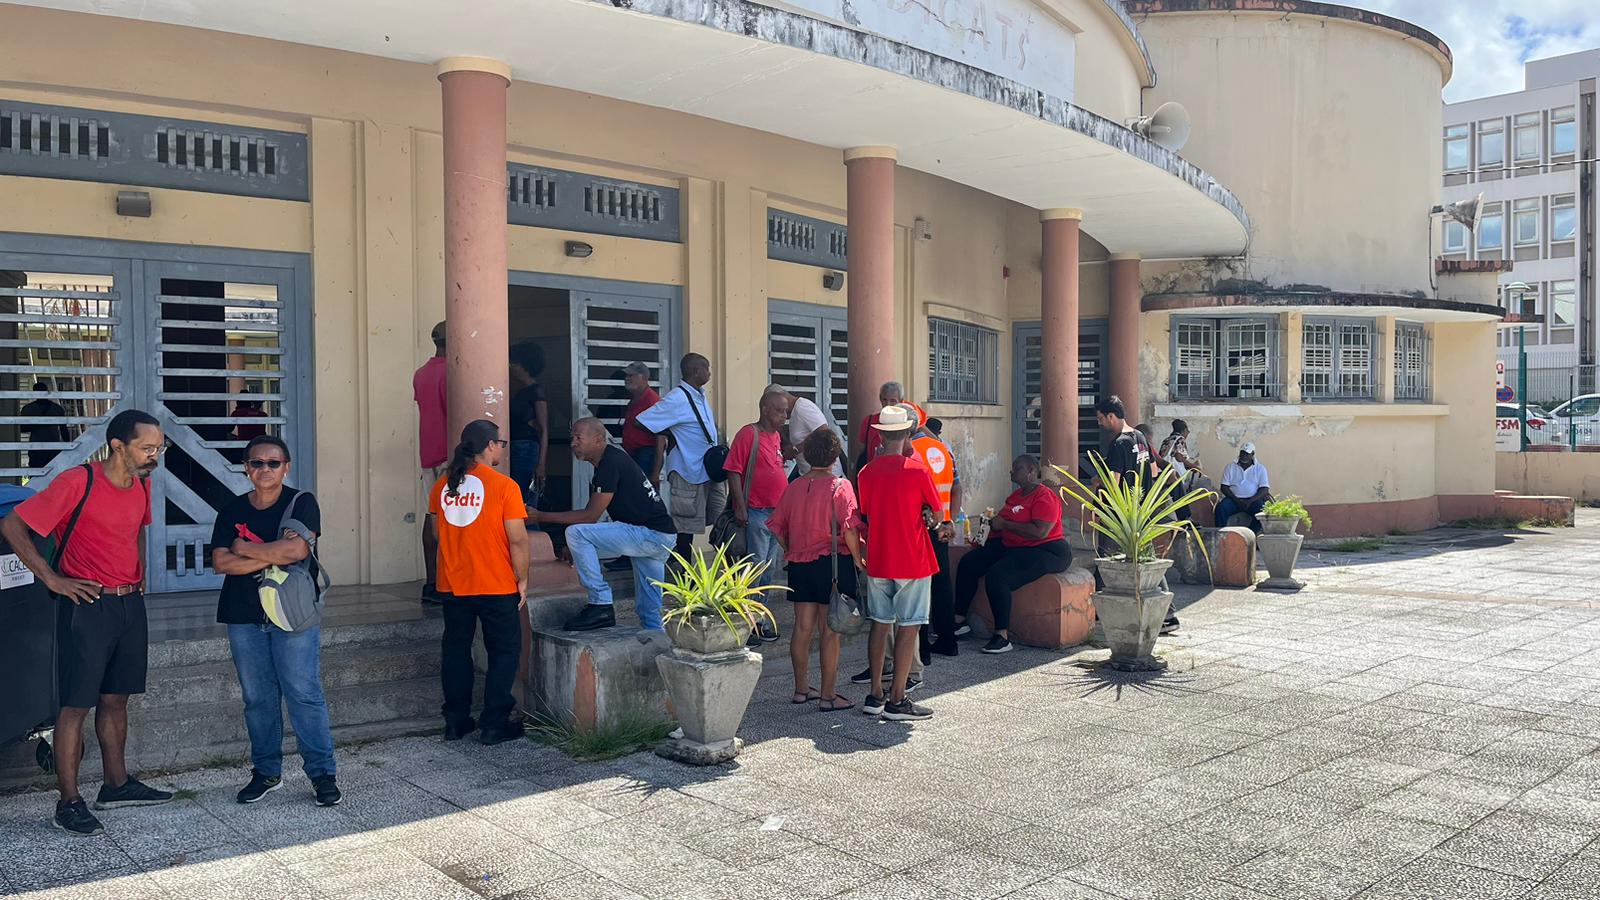     Réforme des retraites : la mobilisation « s’essouffle » en Martinique

